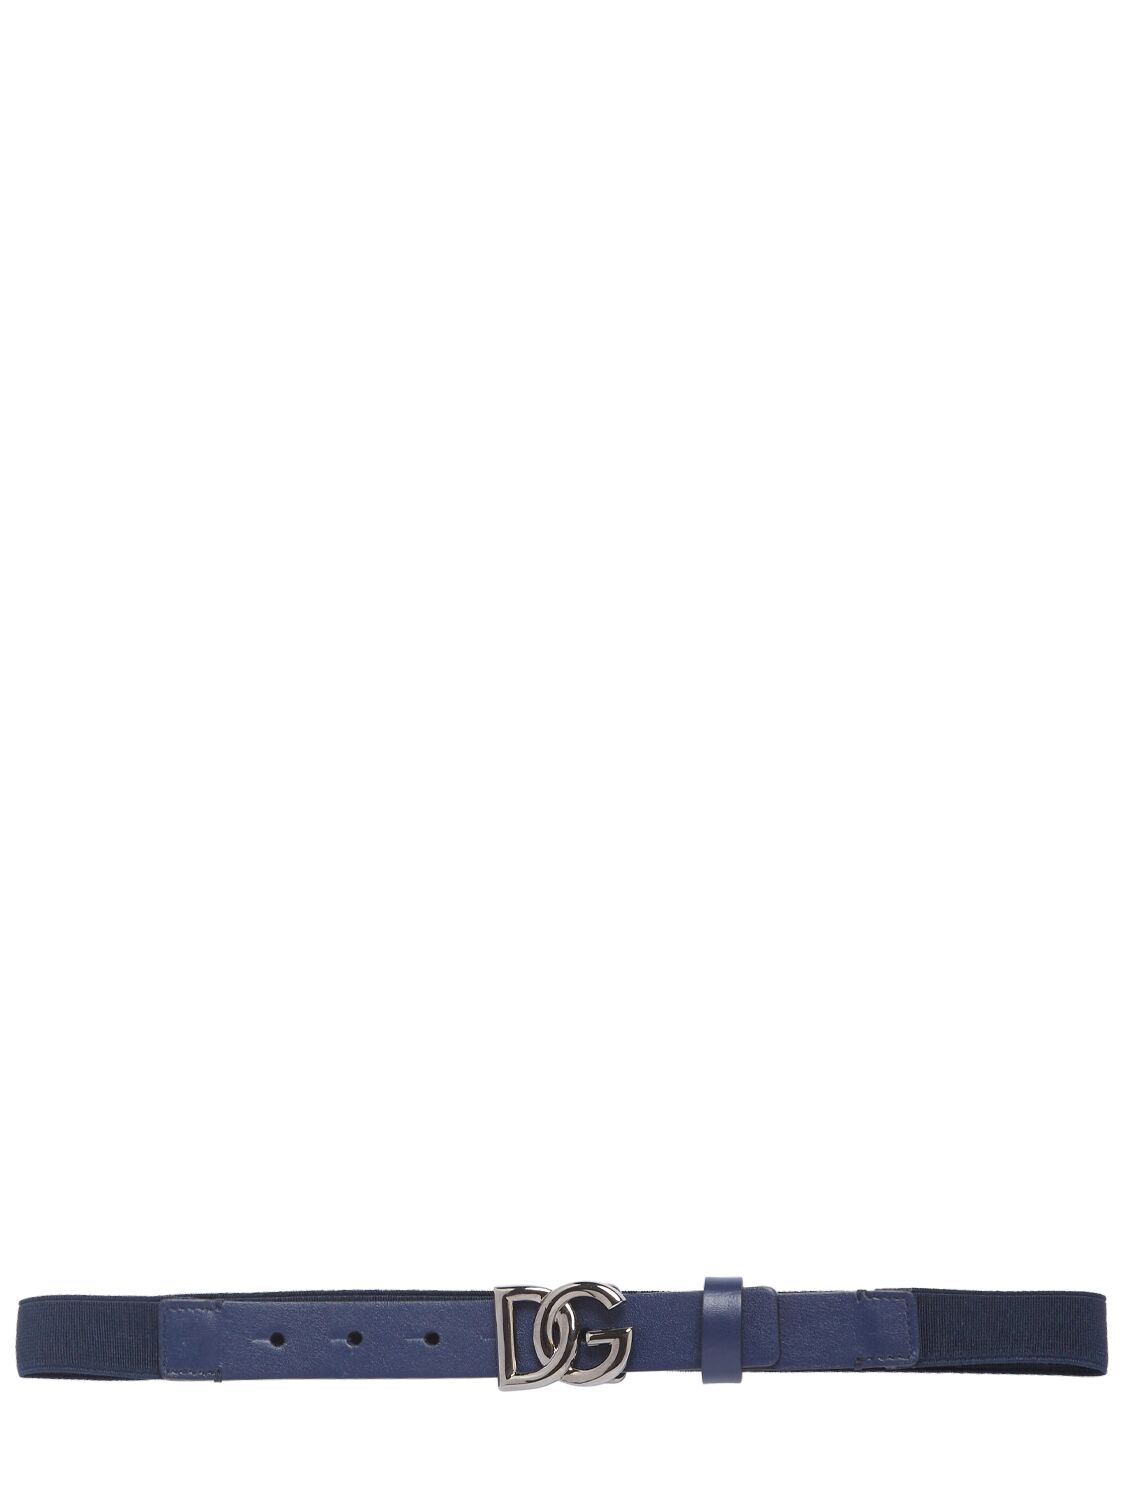 Dolce & Gabbana Kids' Patent Leather Belt In Blau